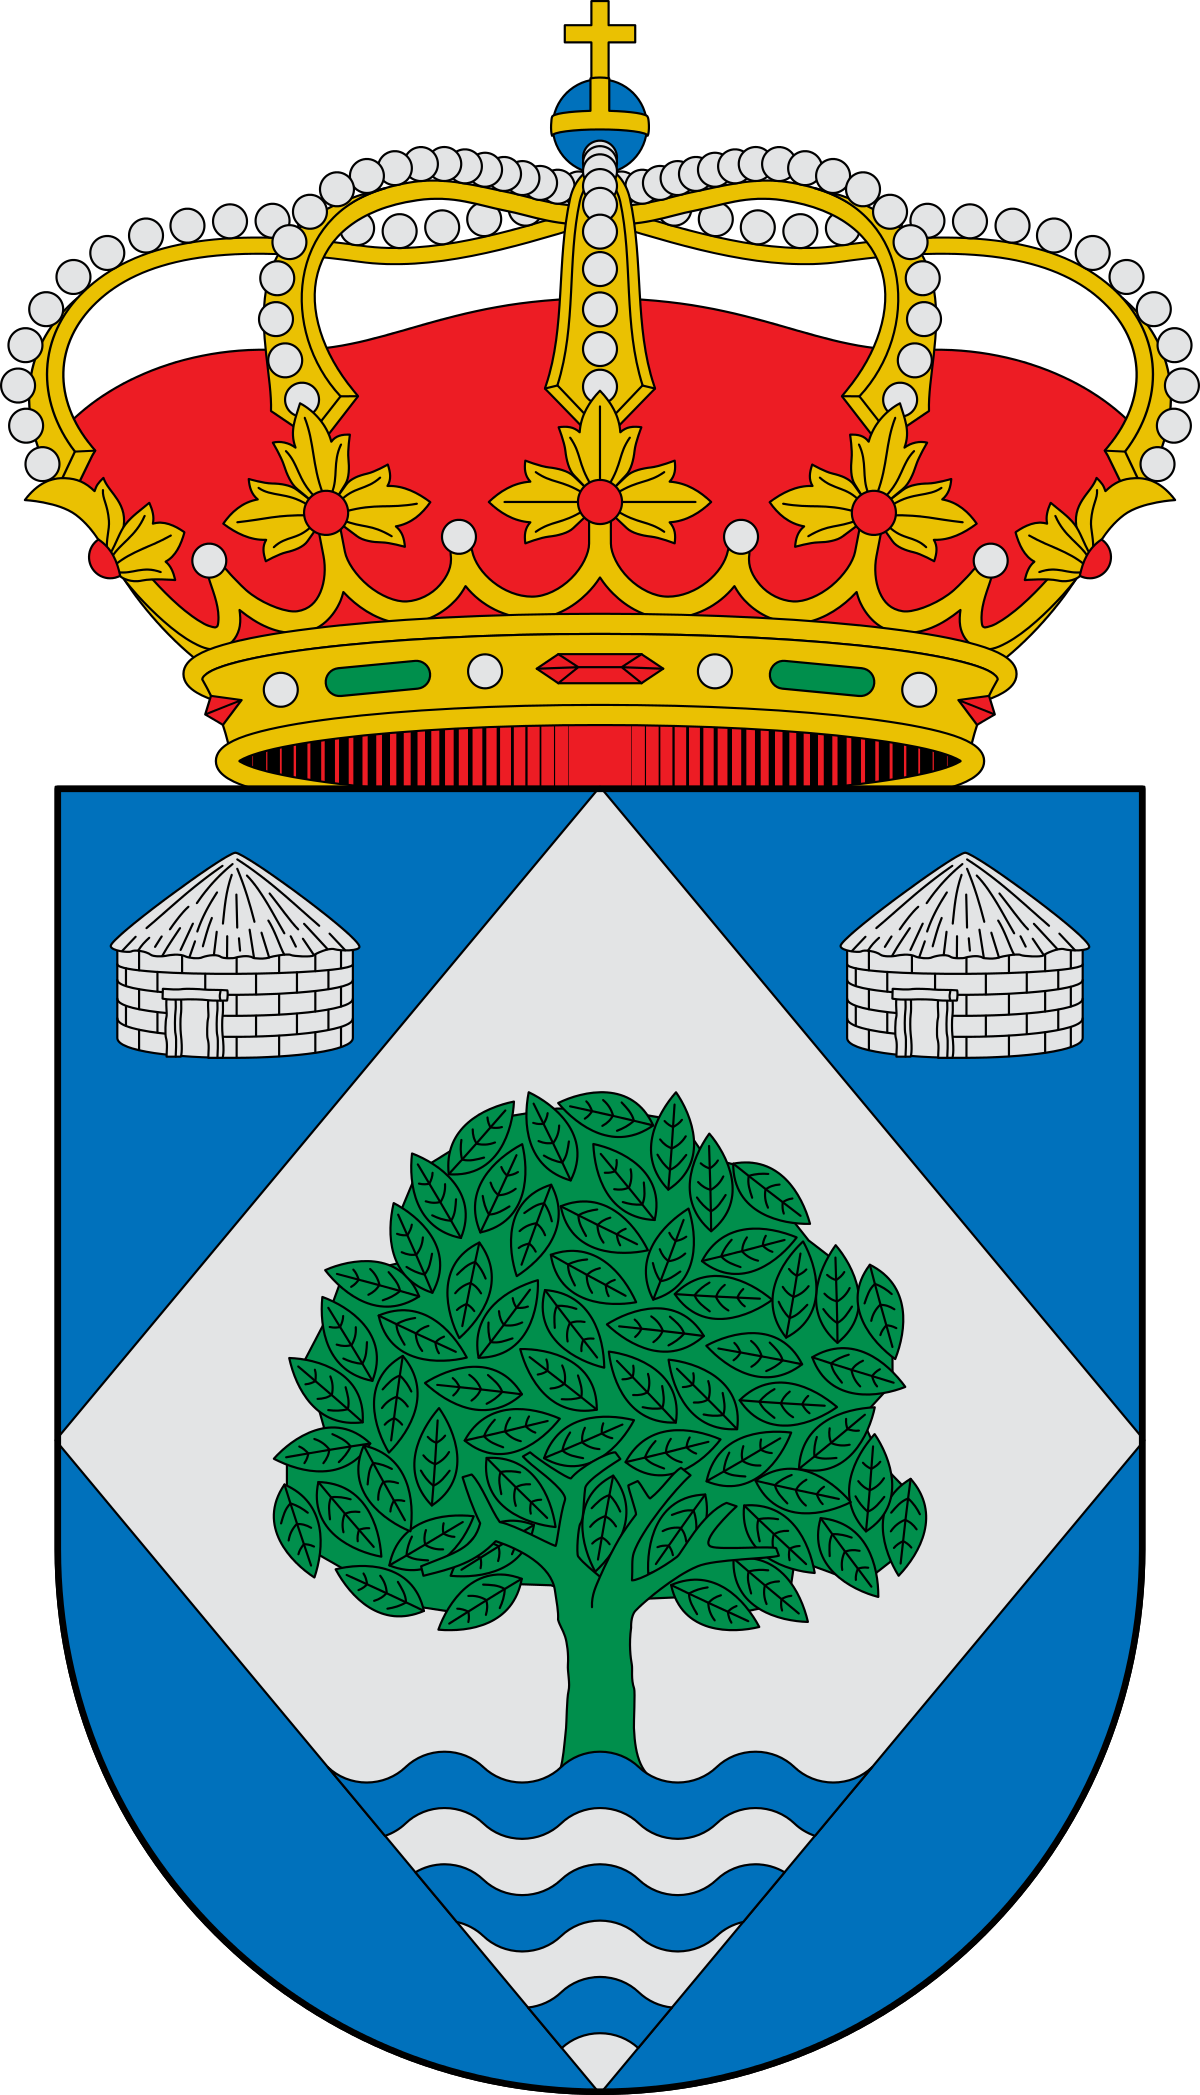 Escudo_de_Noceda_del_Bierzo_(León).svg